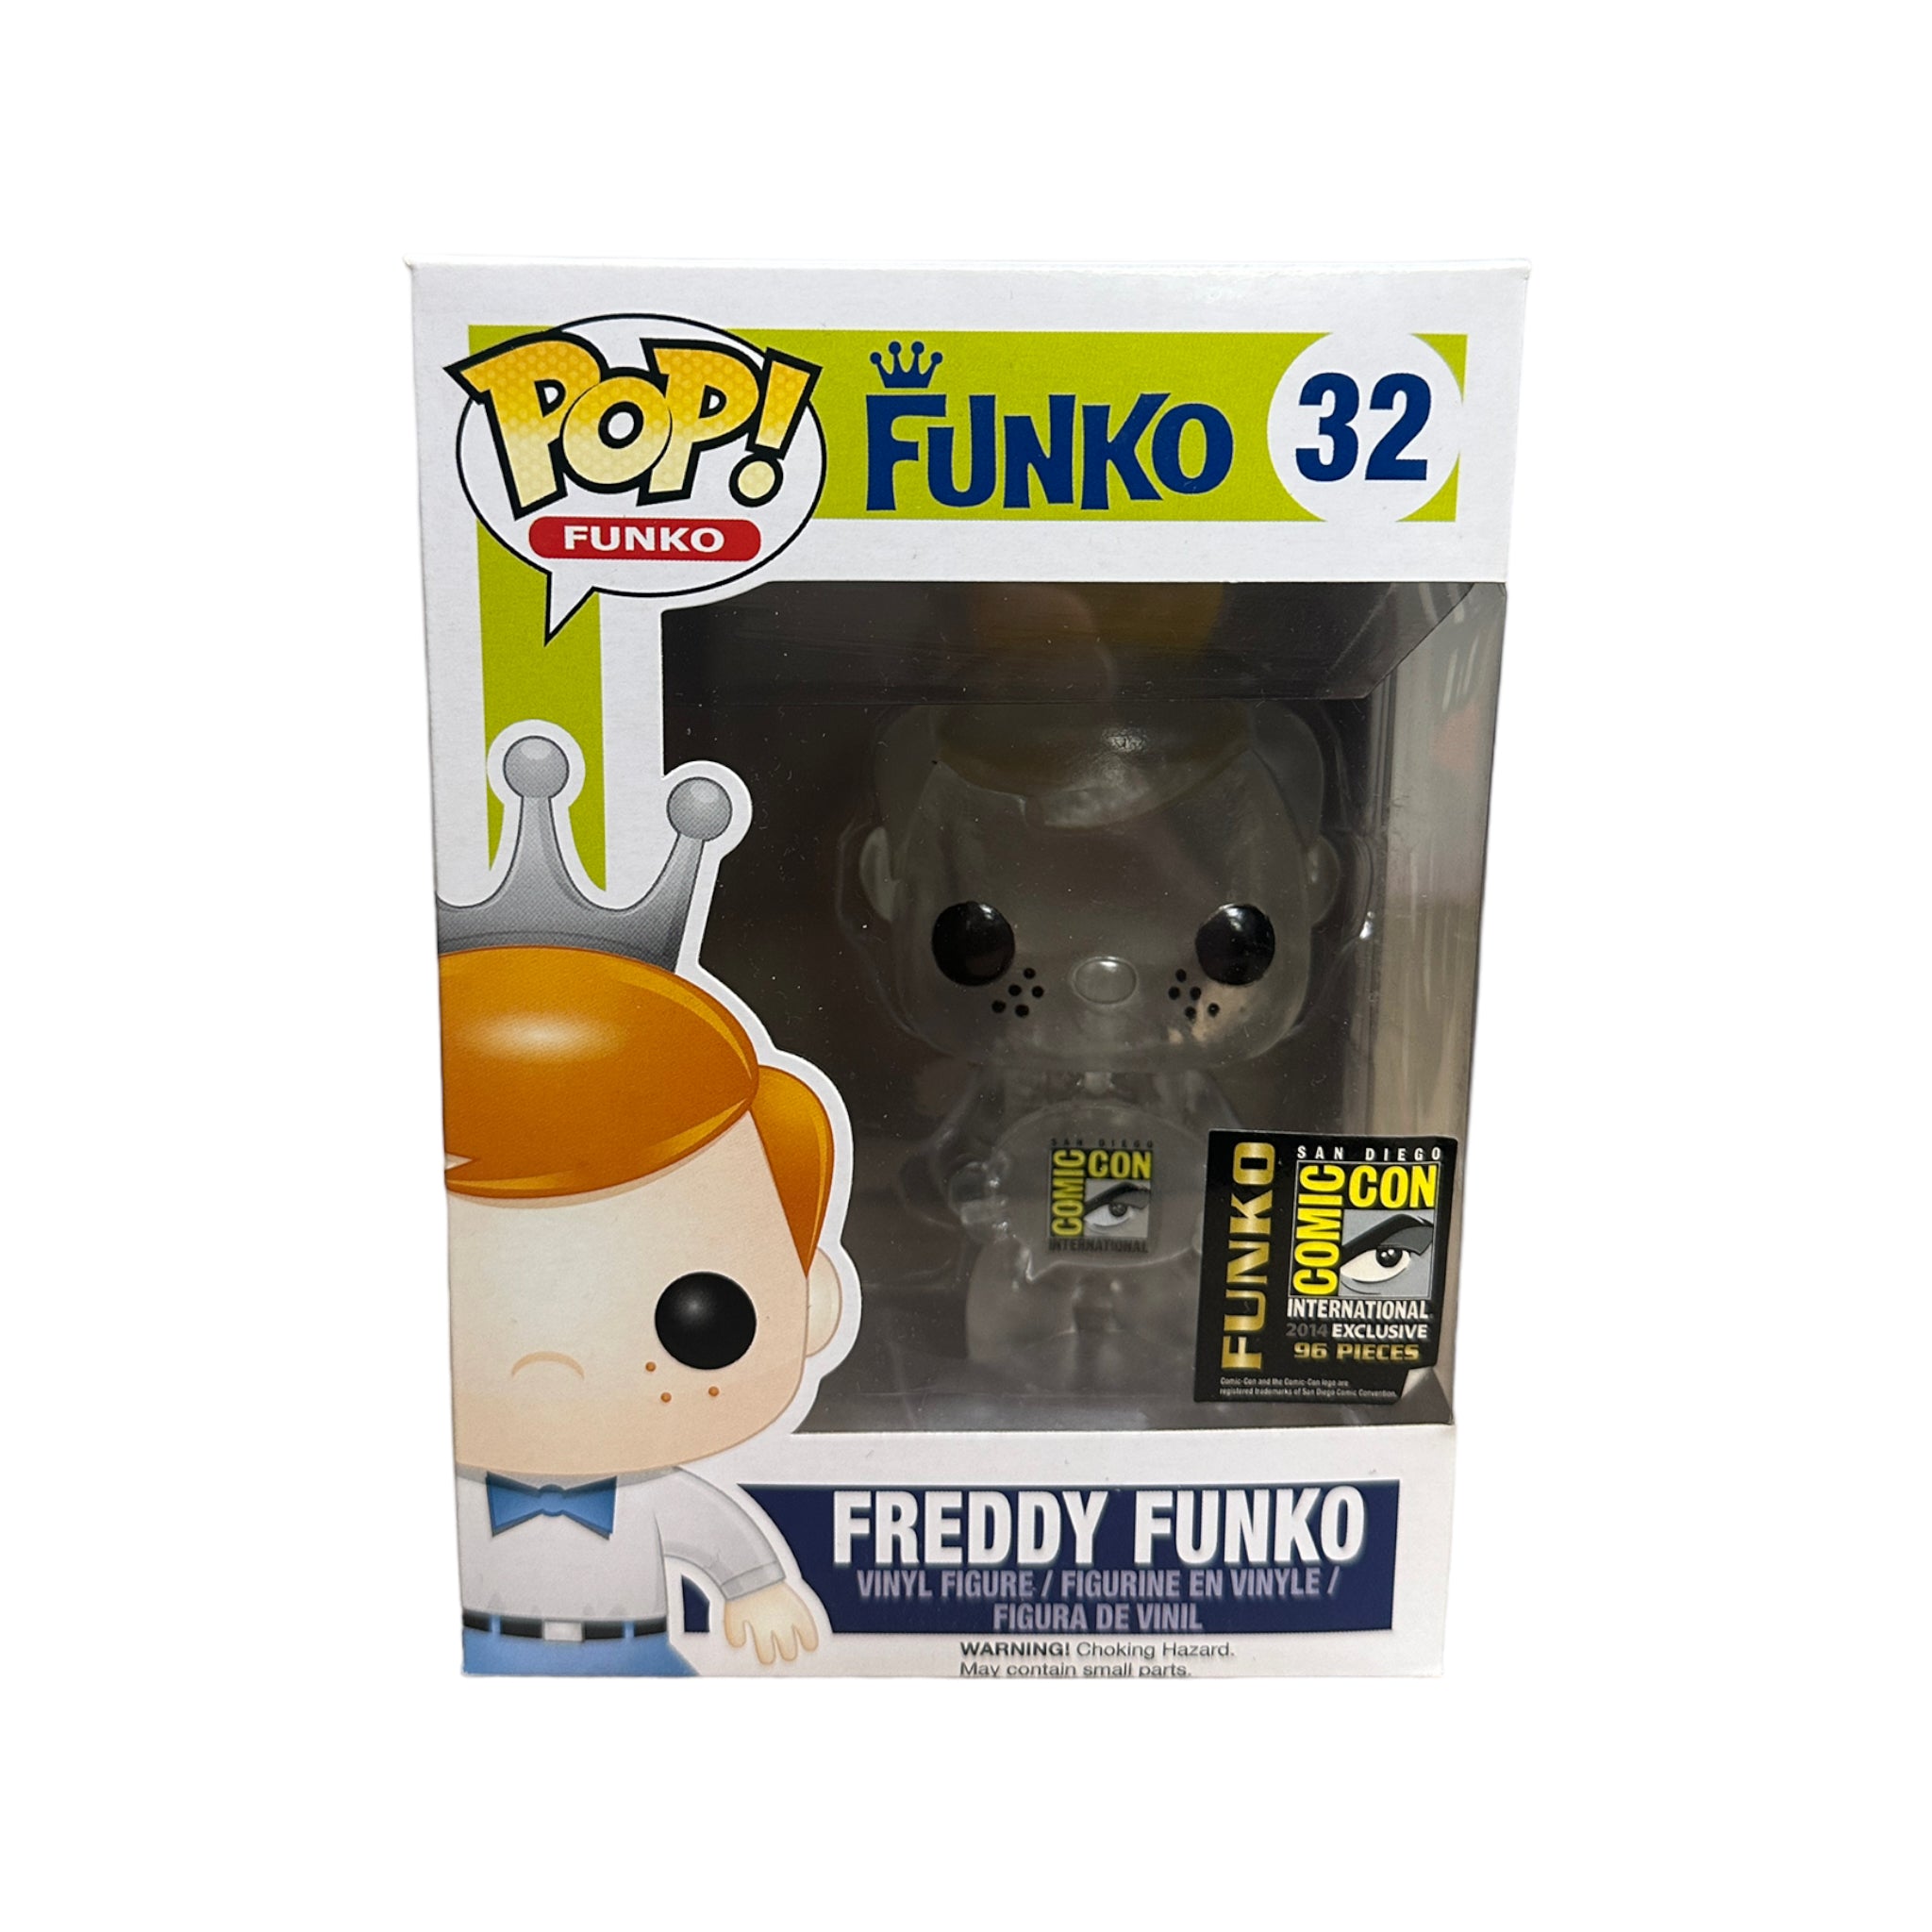 Freddy Funko Clear #32 Funko Pop! - SDCC 2014 Exclusive LE96 Pcs - Condition 7/10